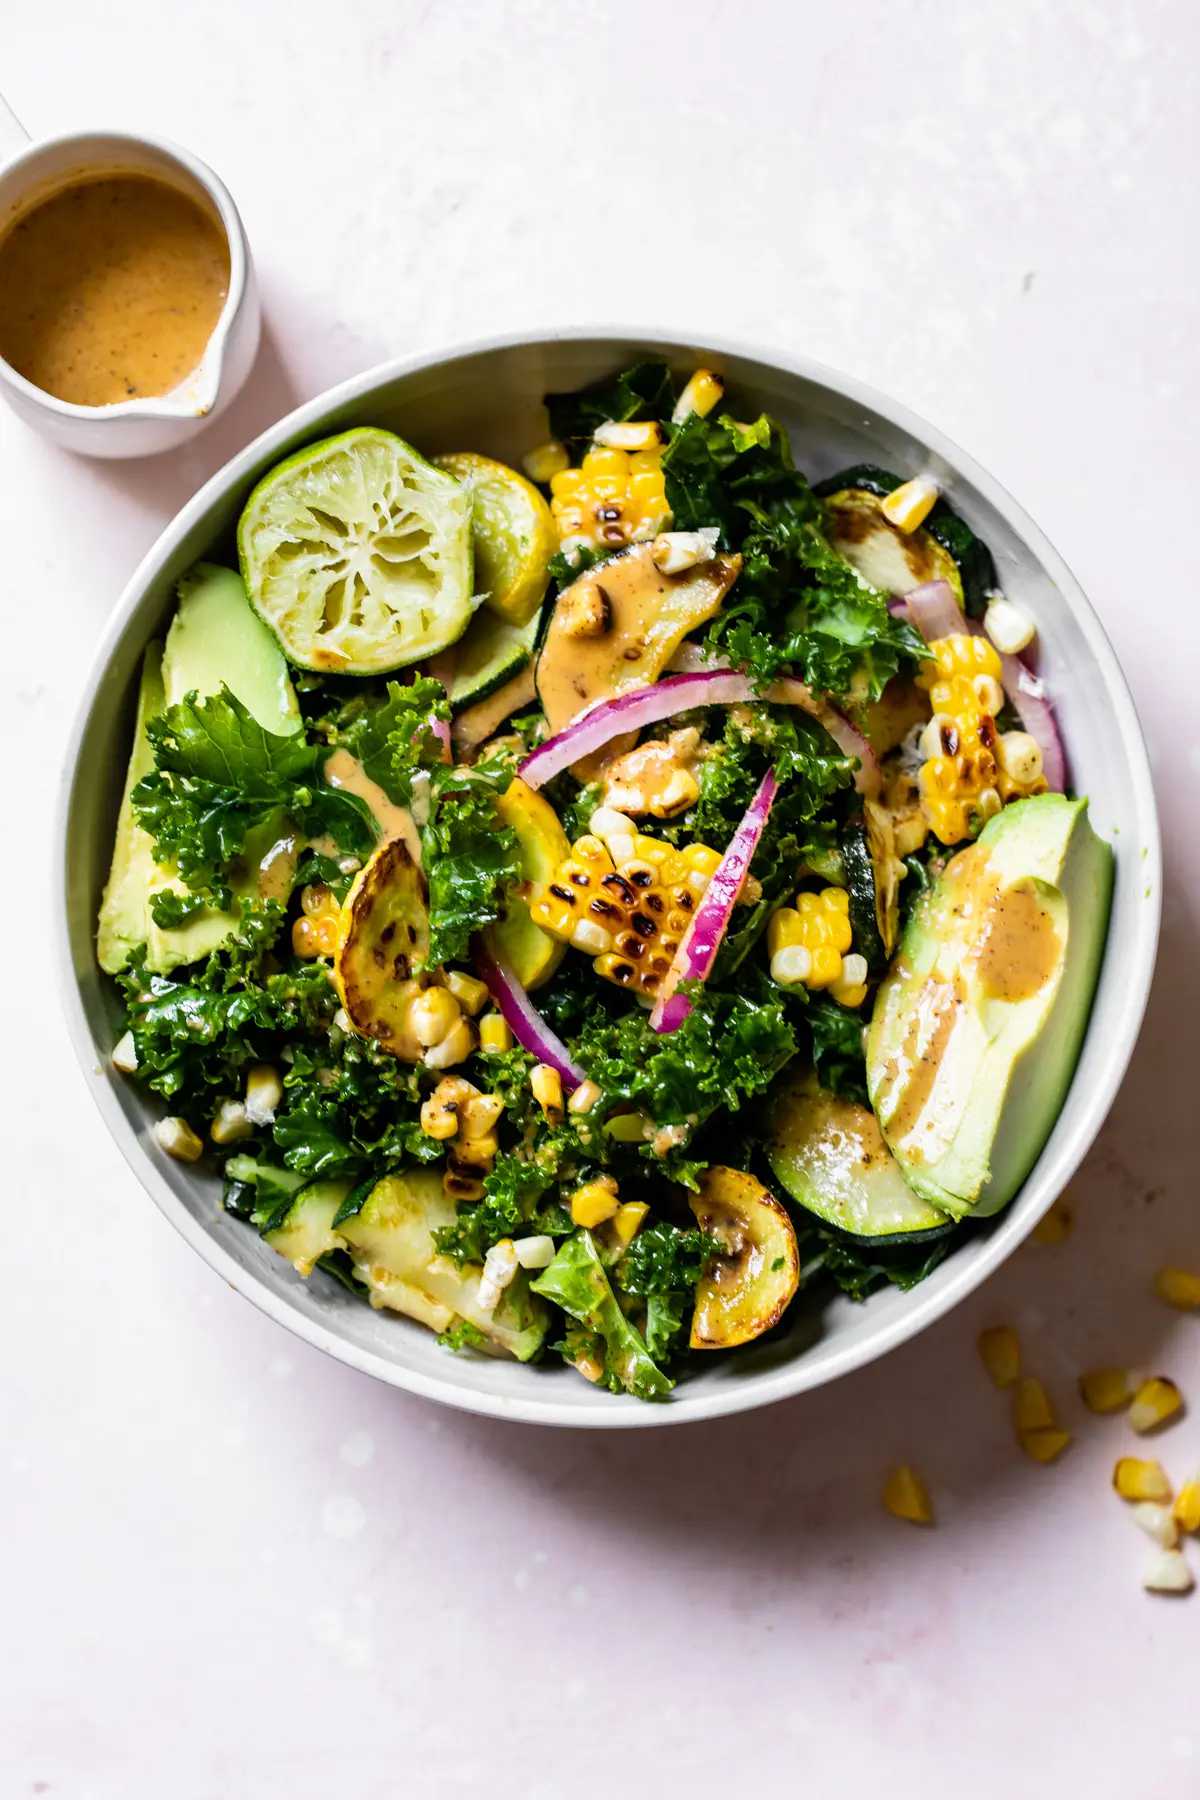 Grilled Corn Kale Salad